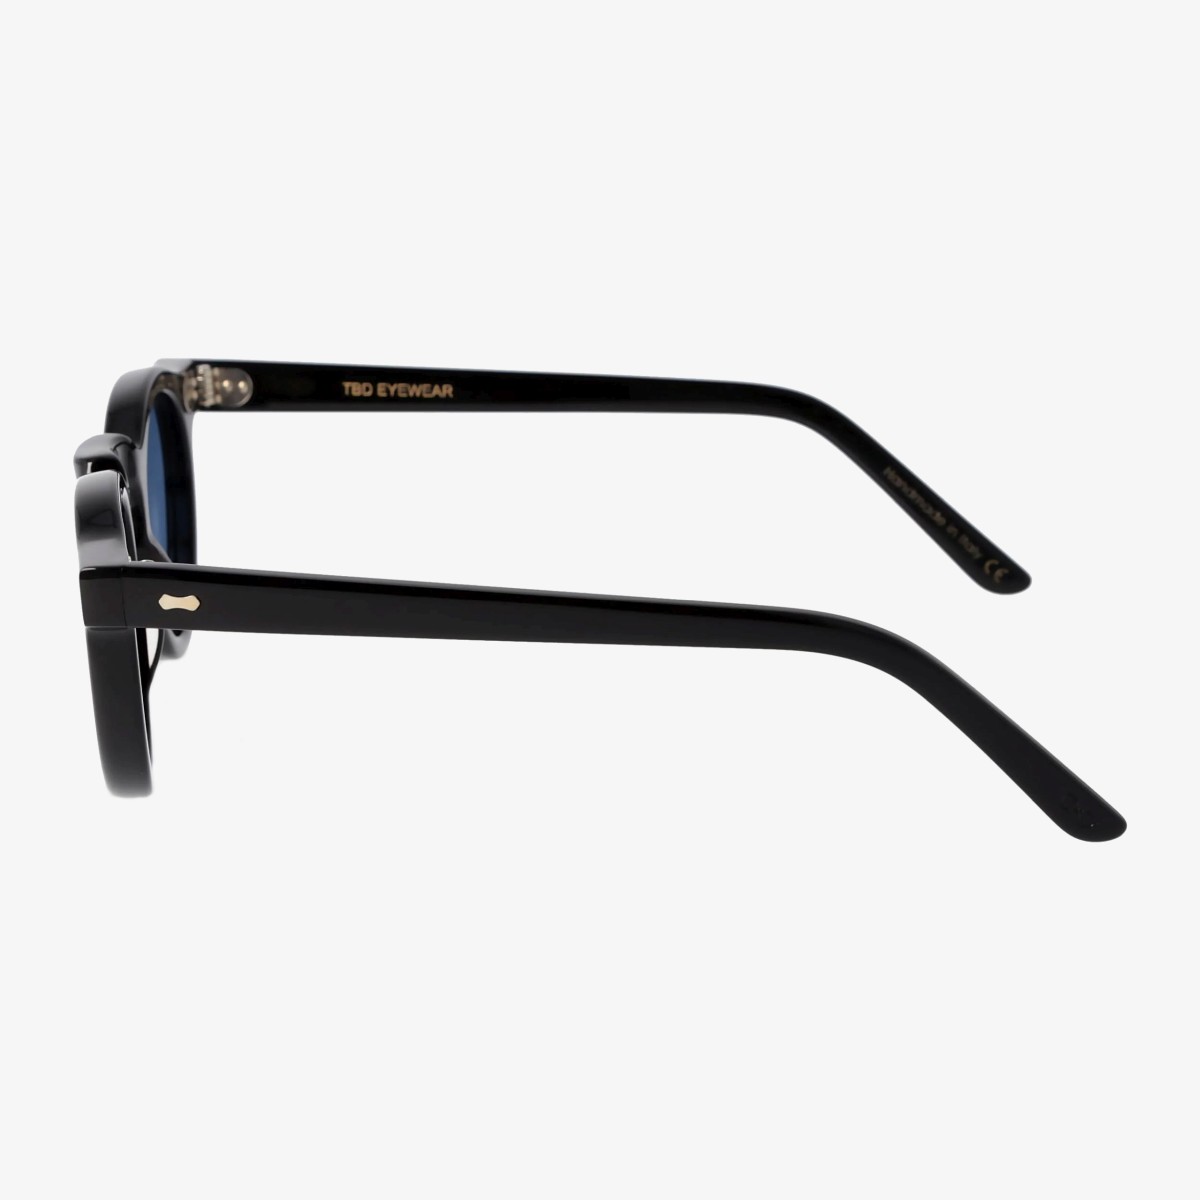 TBD Eyewear Welt saulės akiniai juodais rėmeliais ir mėlynais lęšiais